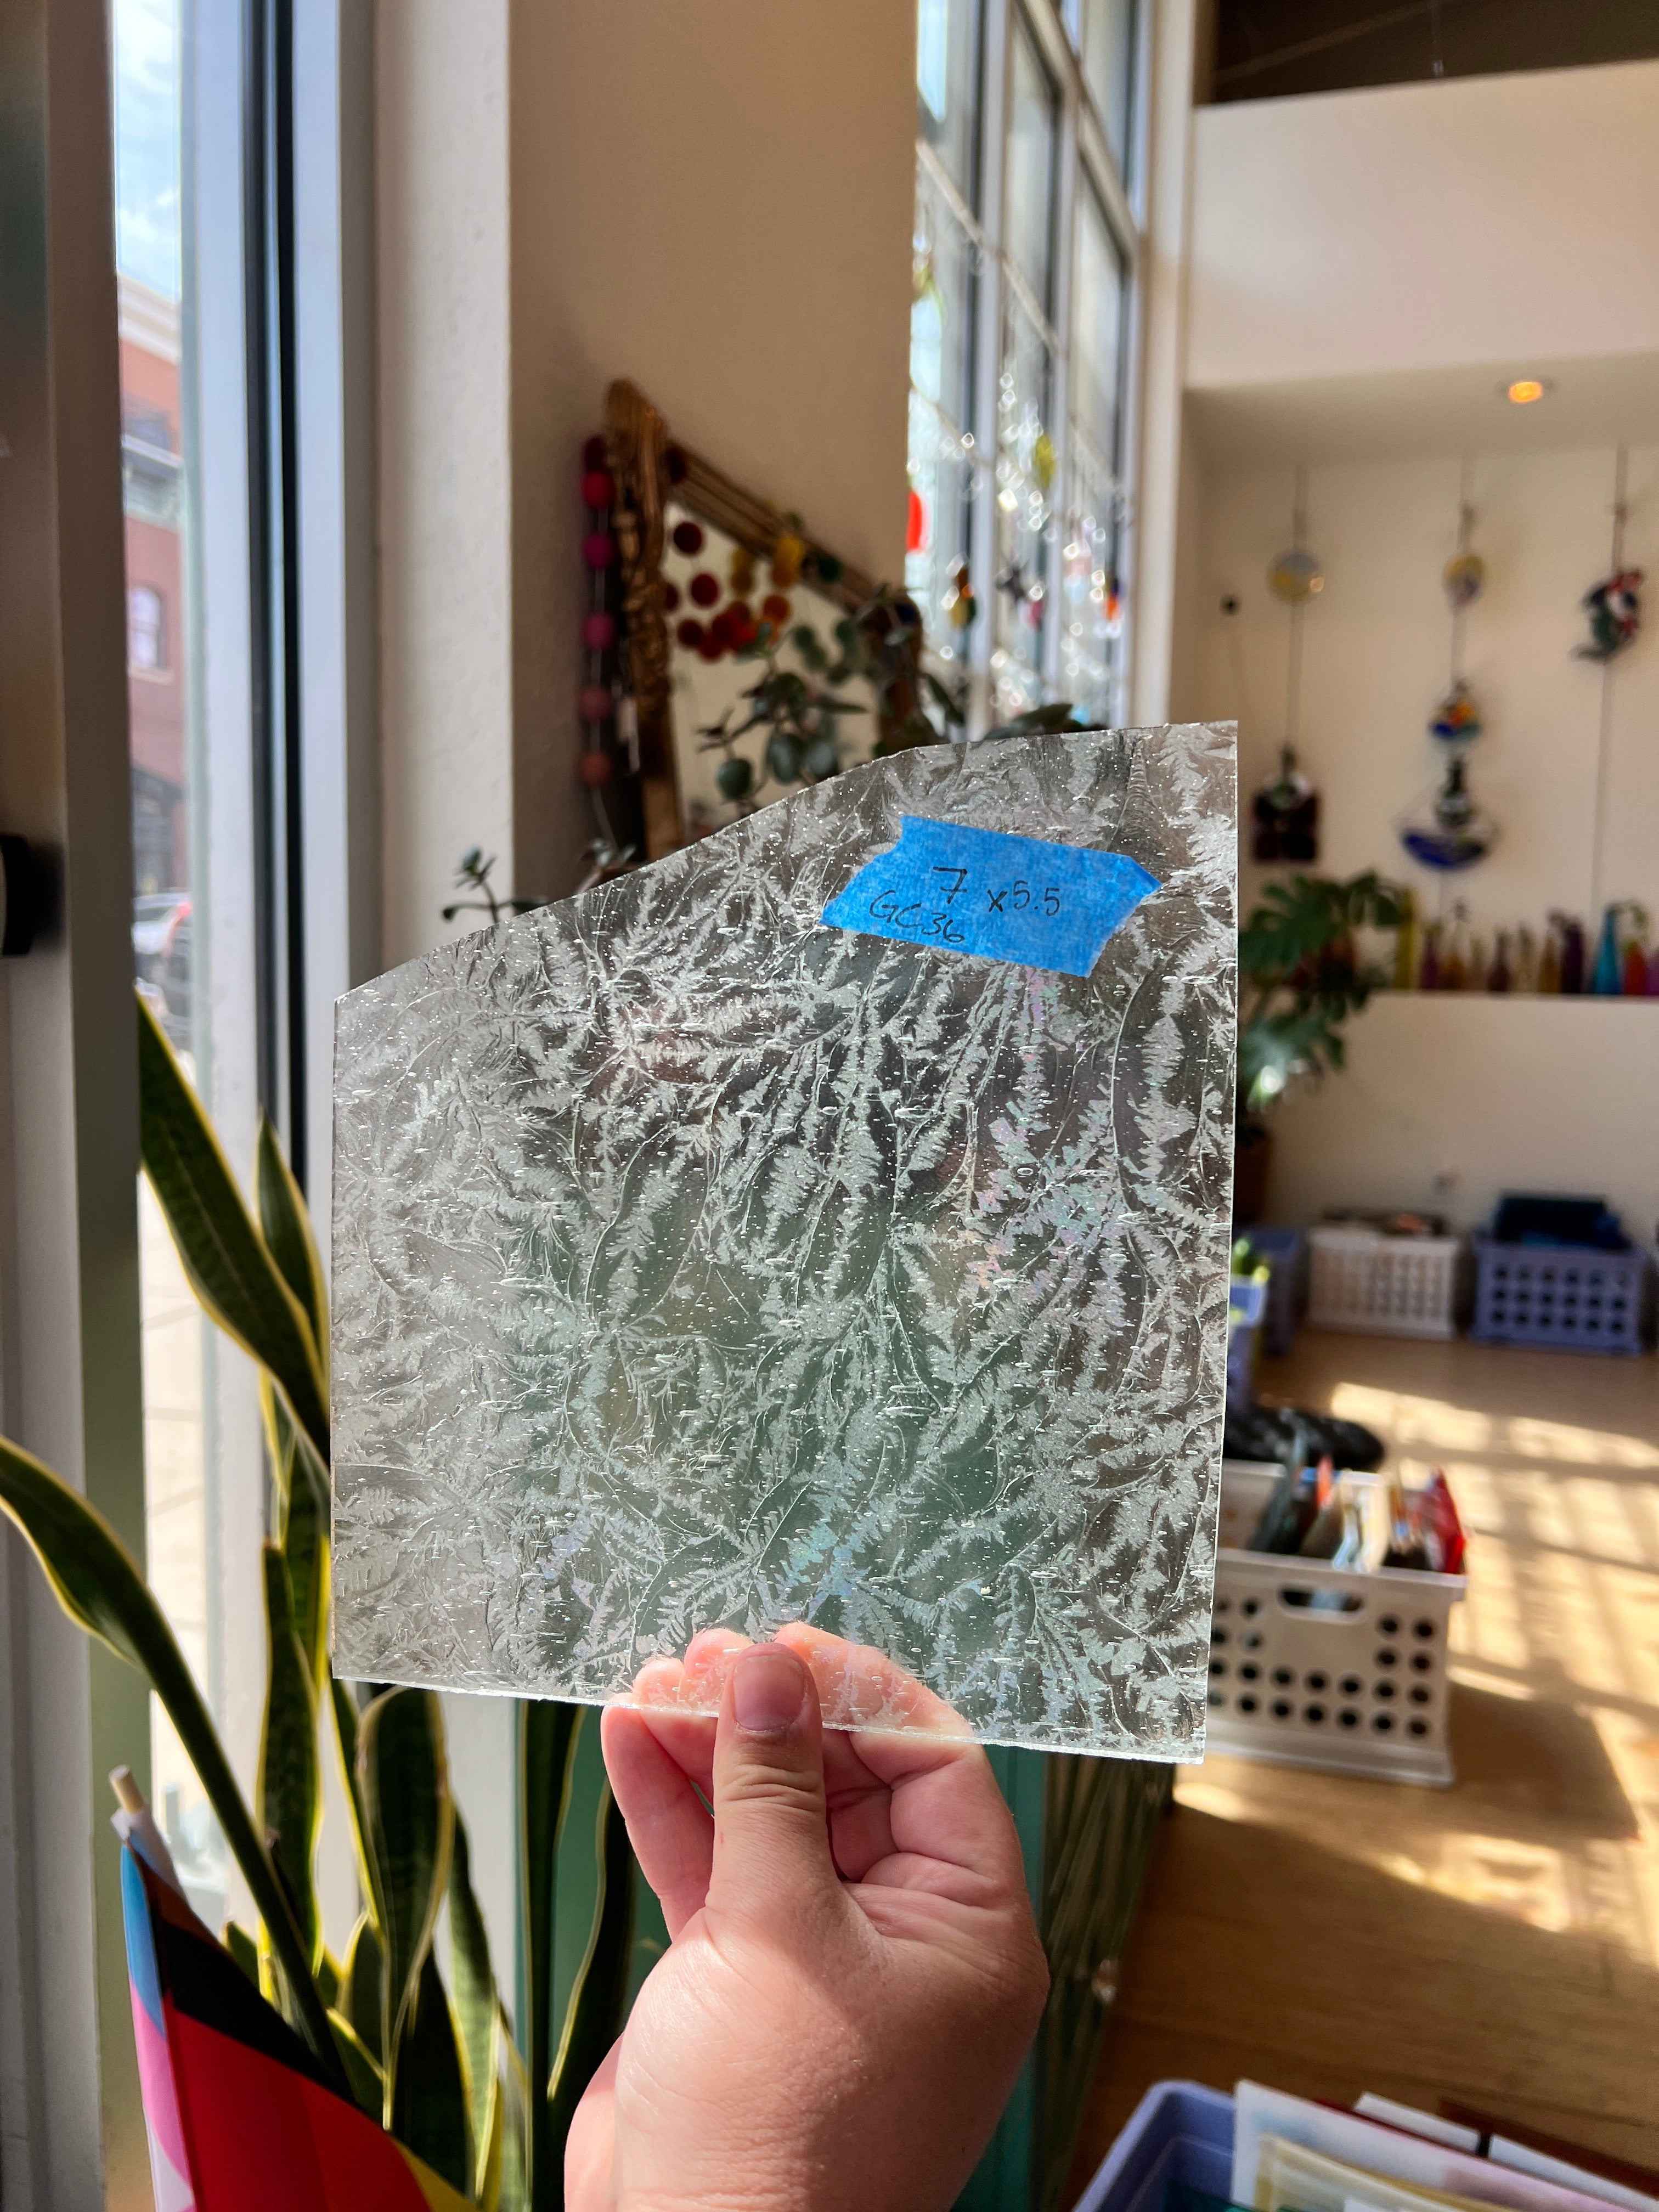 Seedy Clear Glue Chip + slight Iridescent Sheet Glass Colorado Glassworks   